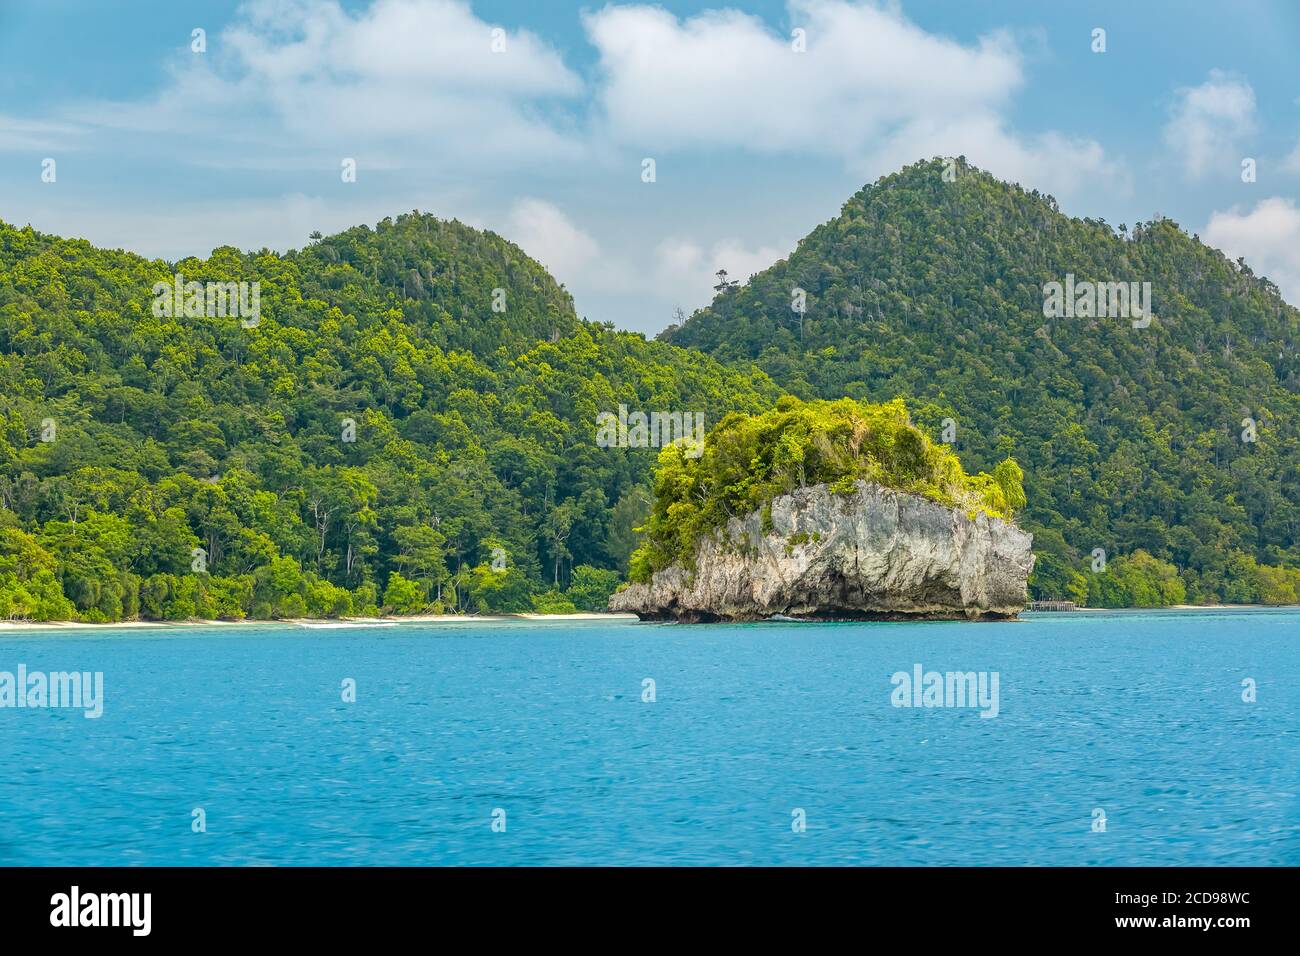 Indonesien. Meerenge zwischen den Inseln. Tag. Küste mit Dschungel und kleine felsige Insel. Berge und Wolken am Horizont Stockfoto